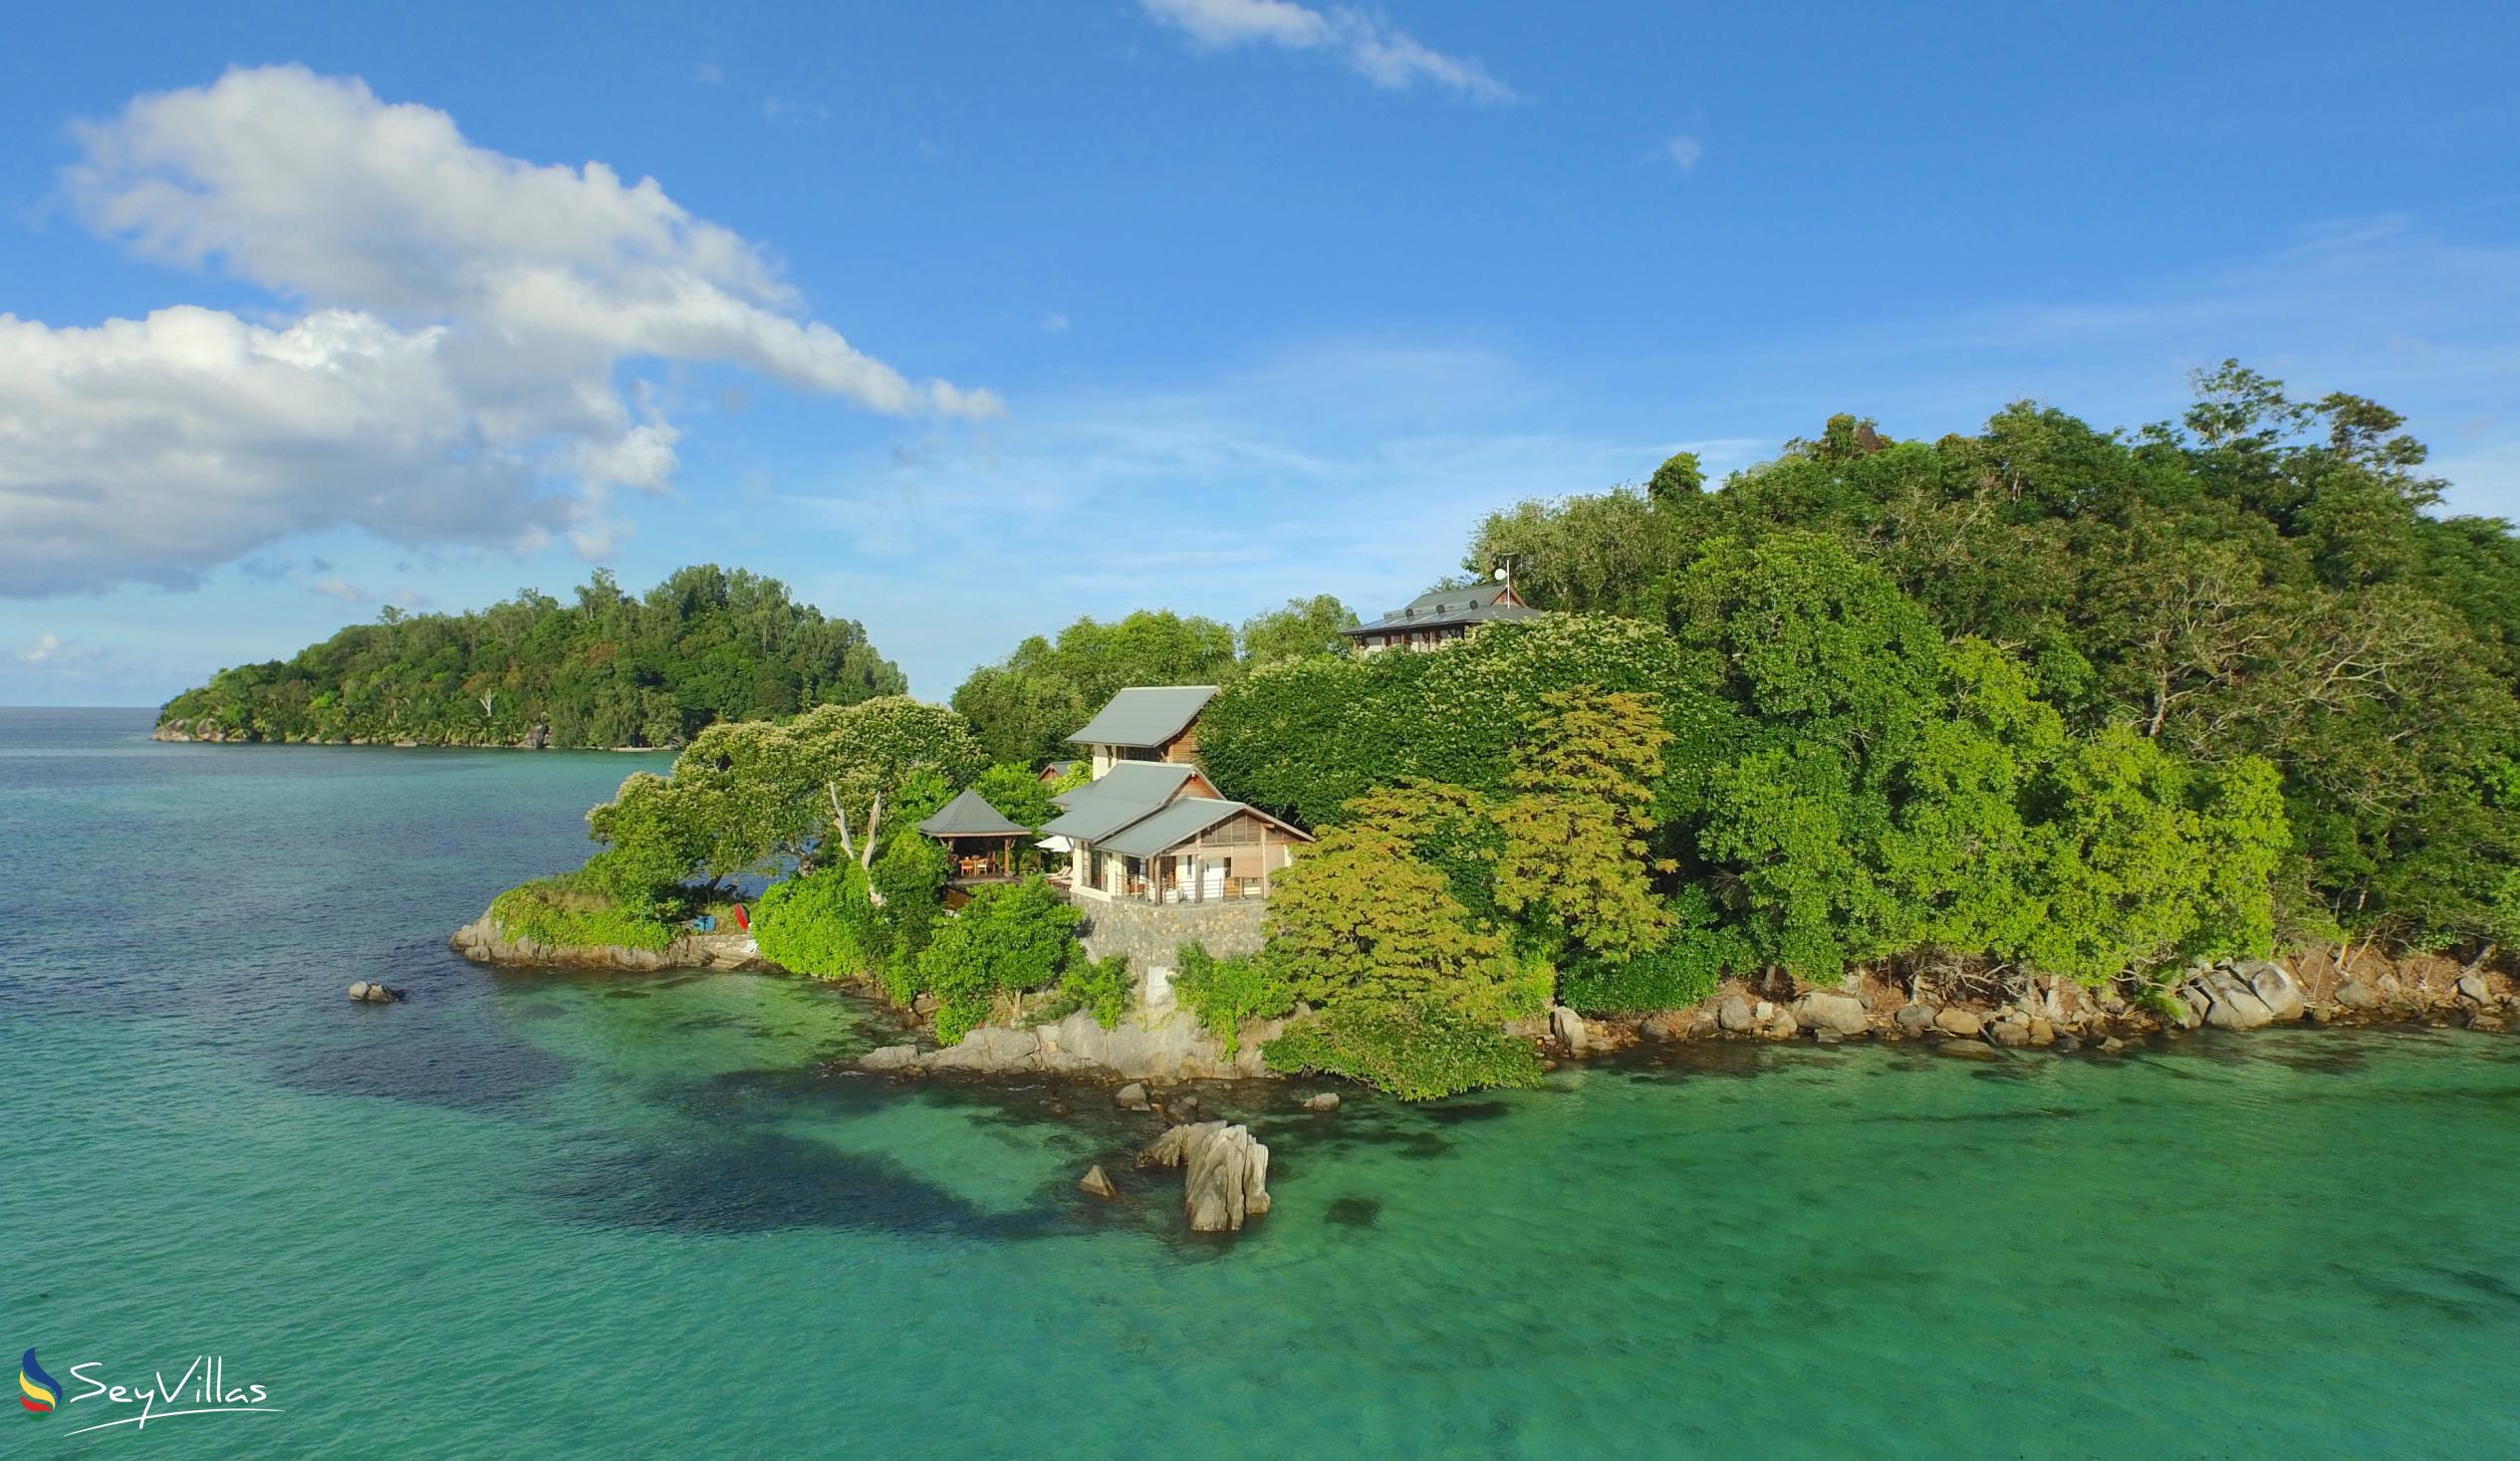 Foto 8: JA Enchanted Island Resort - Aussenbereich - Round Island (Seychellen)